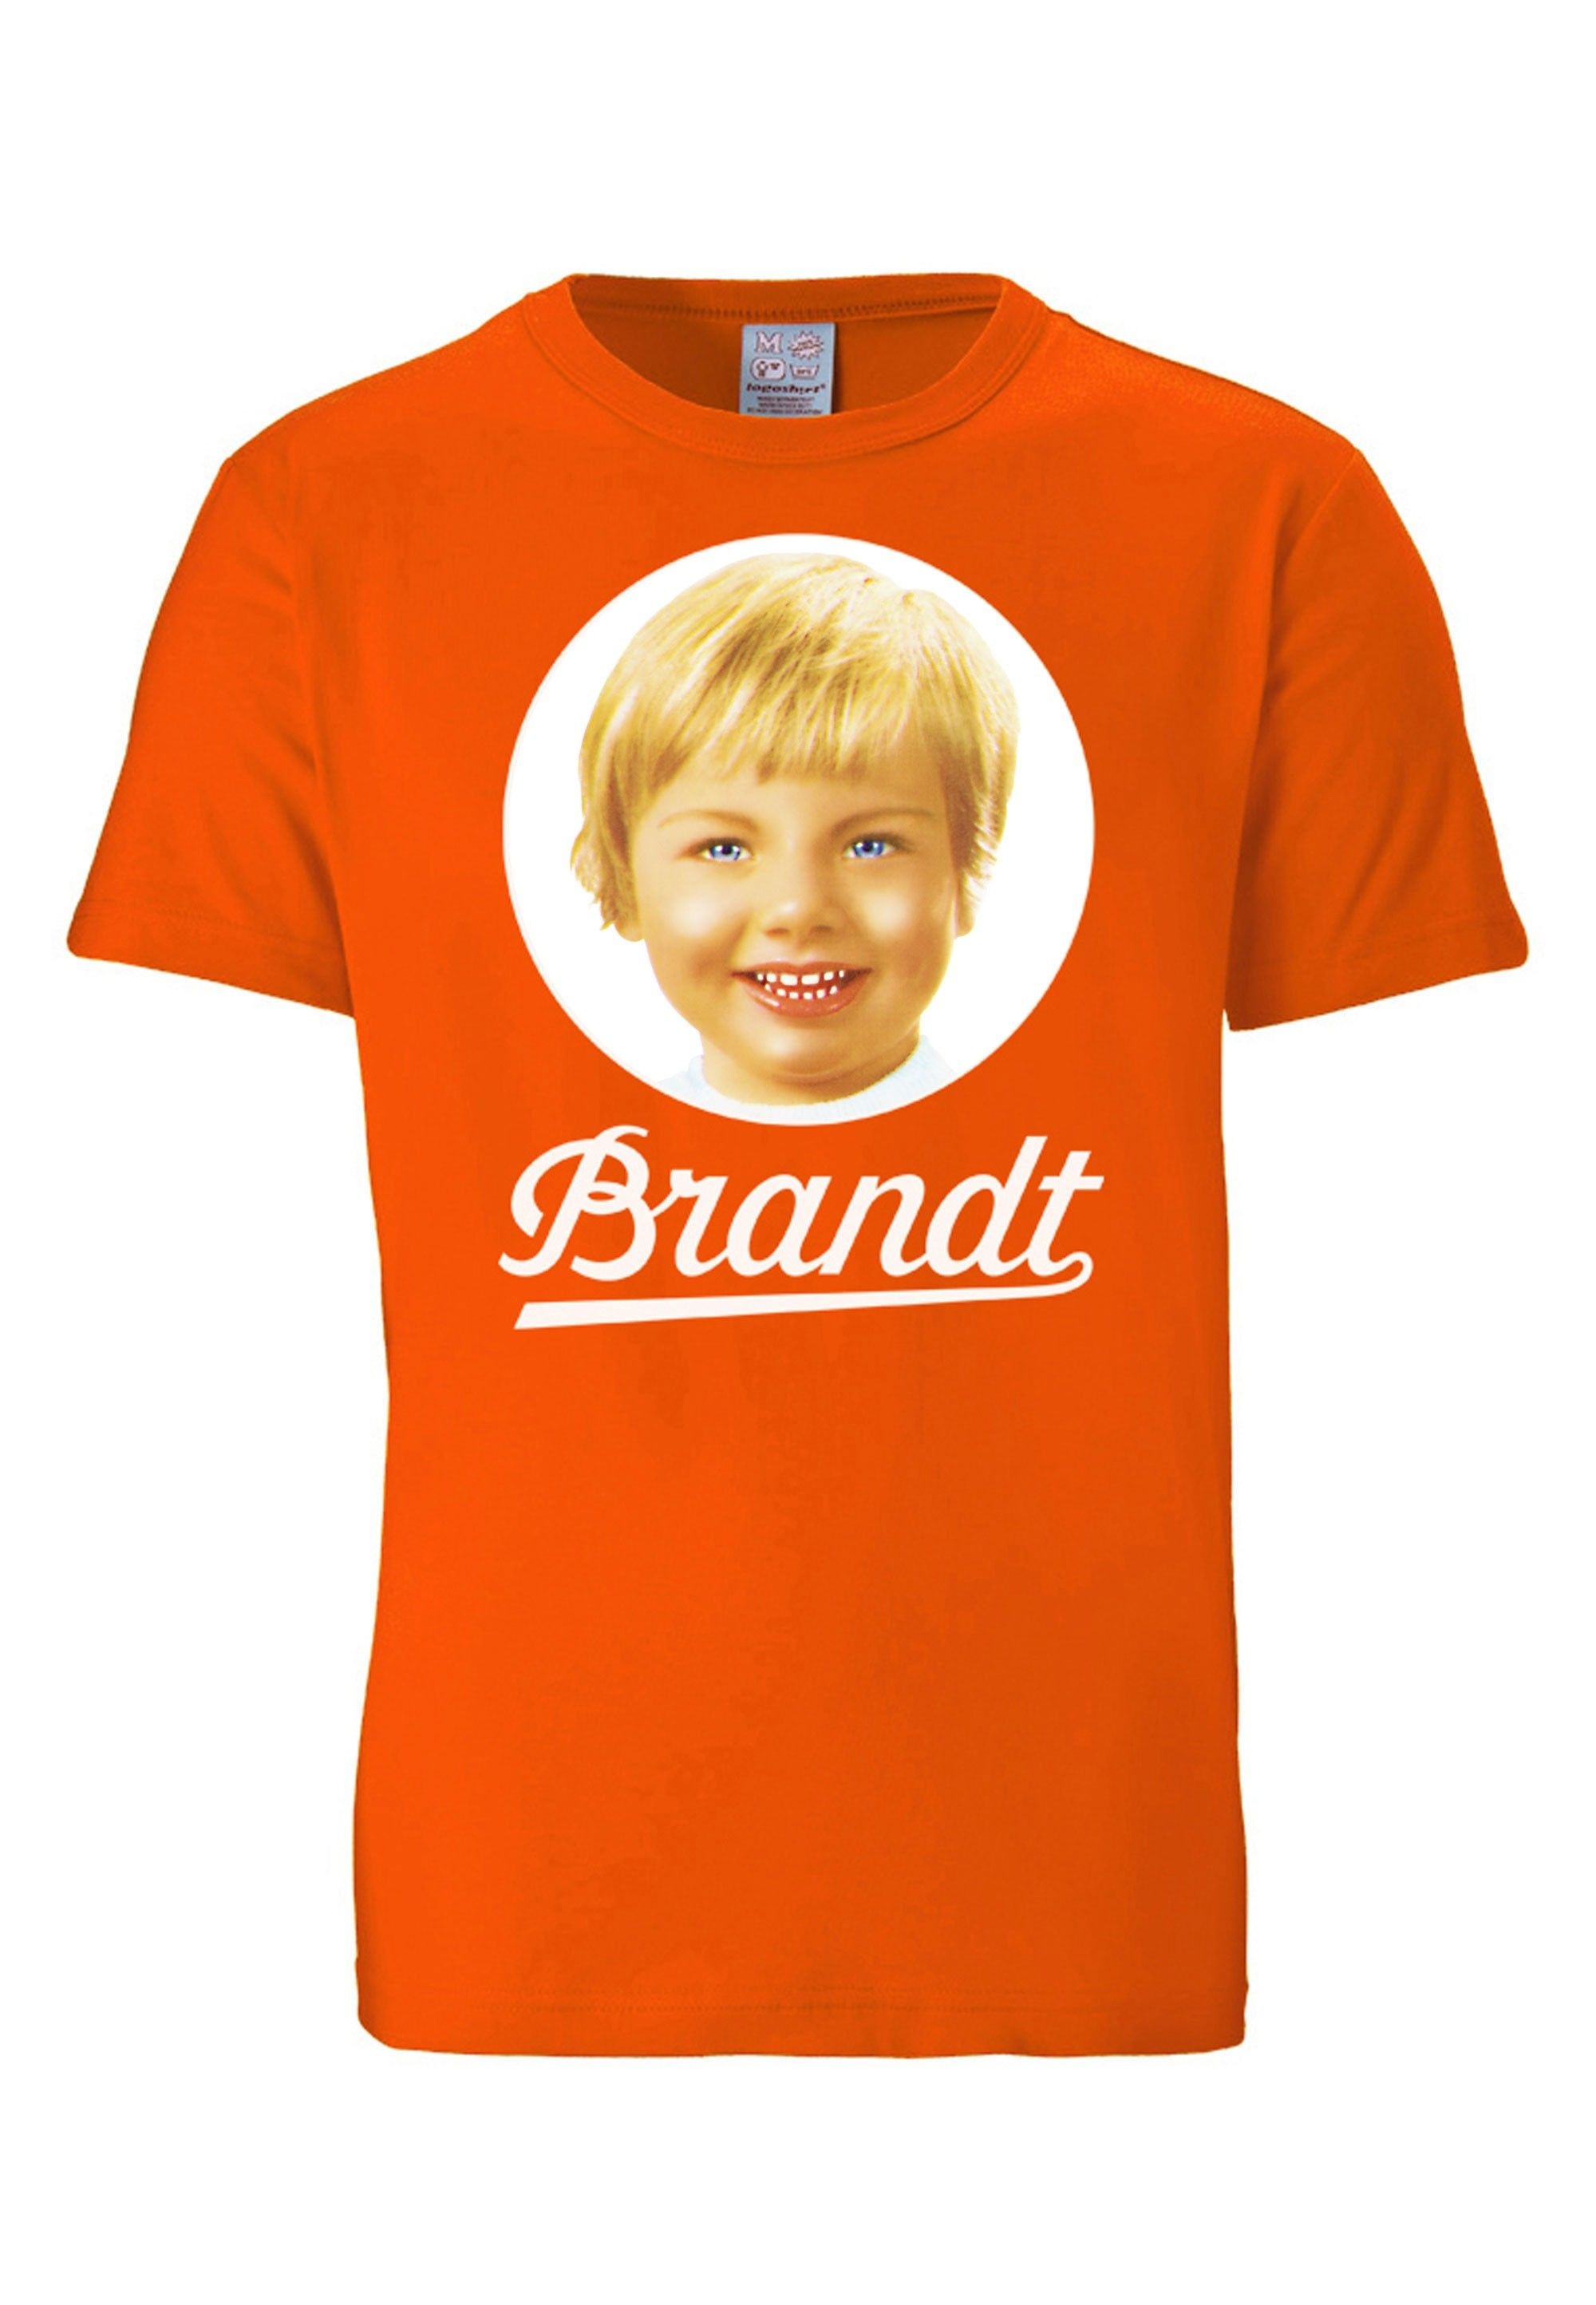 Originaldesign T-Shirt kaufen LOGOSHIRT mit lizenziertem »Brandt«,